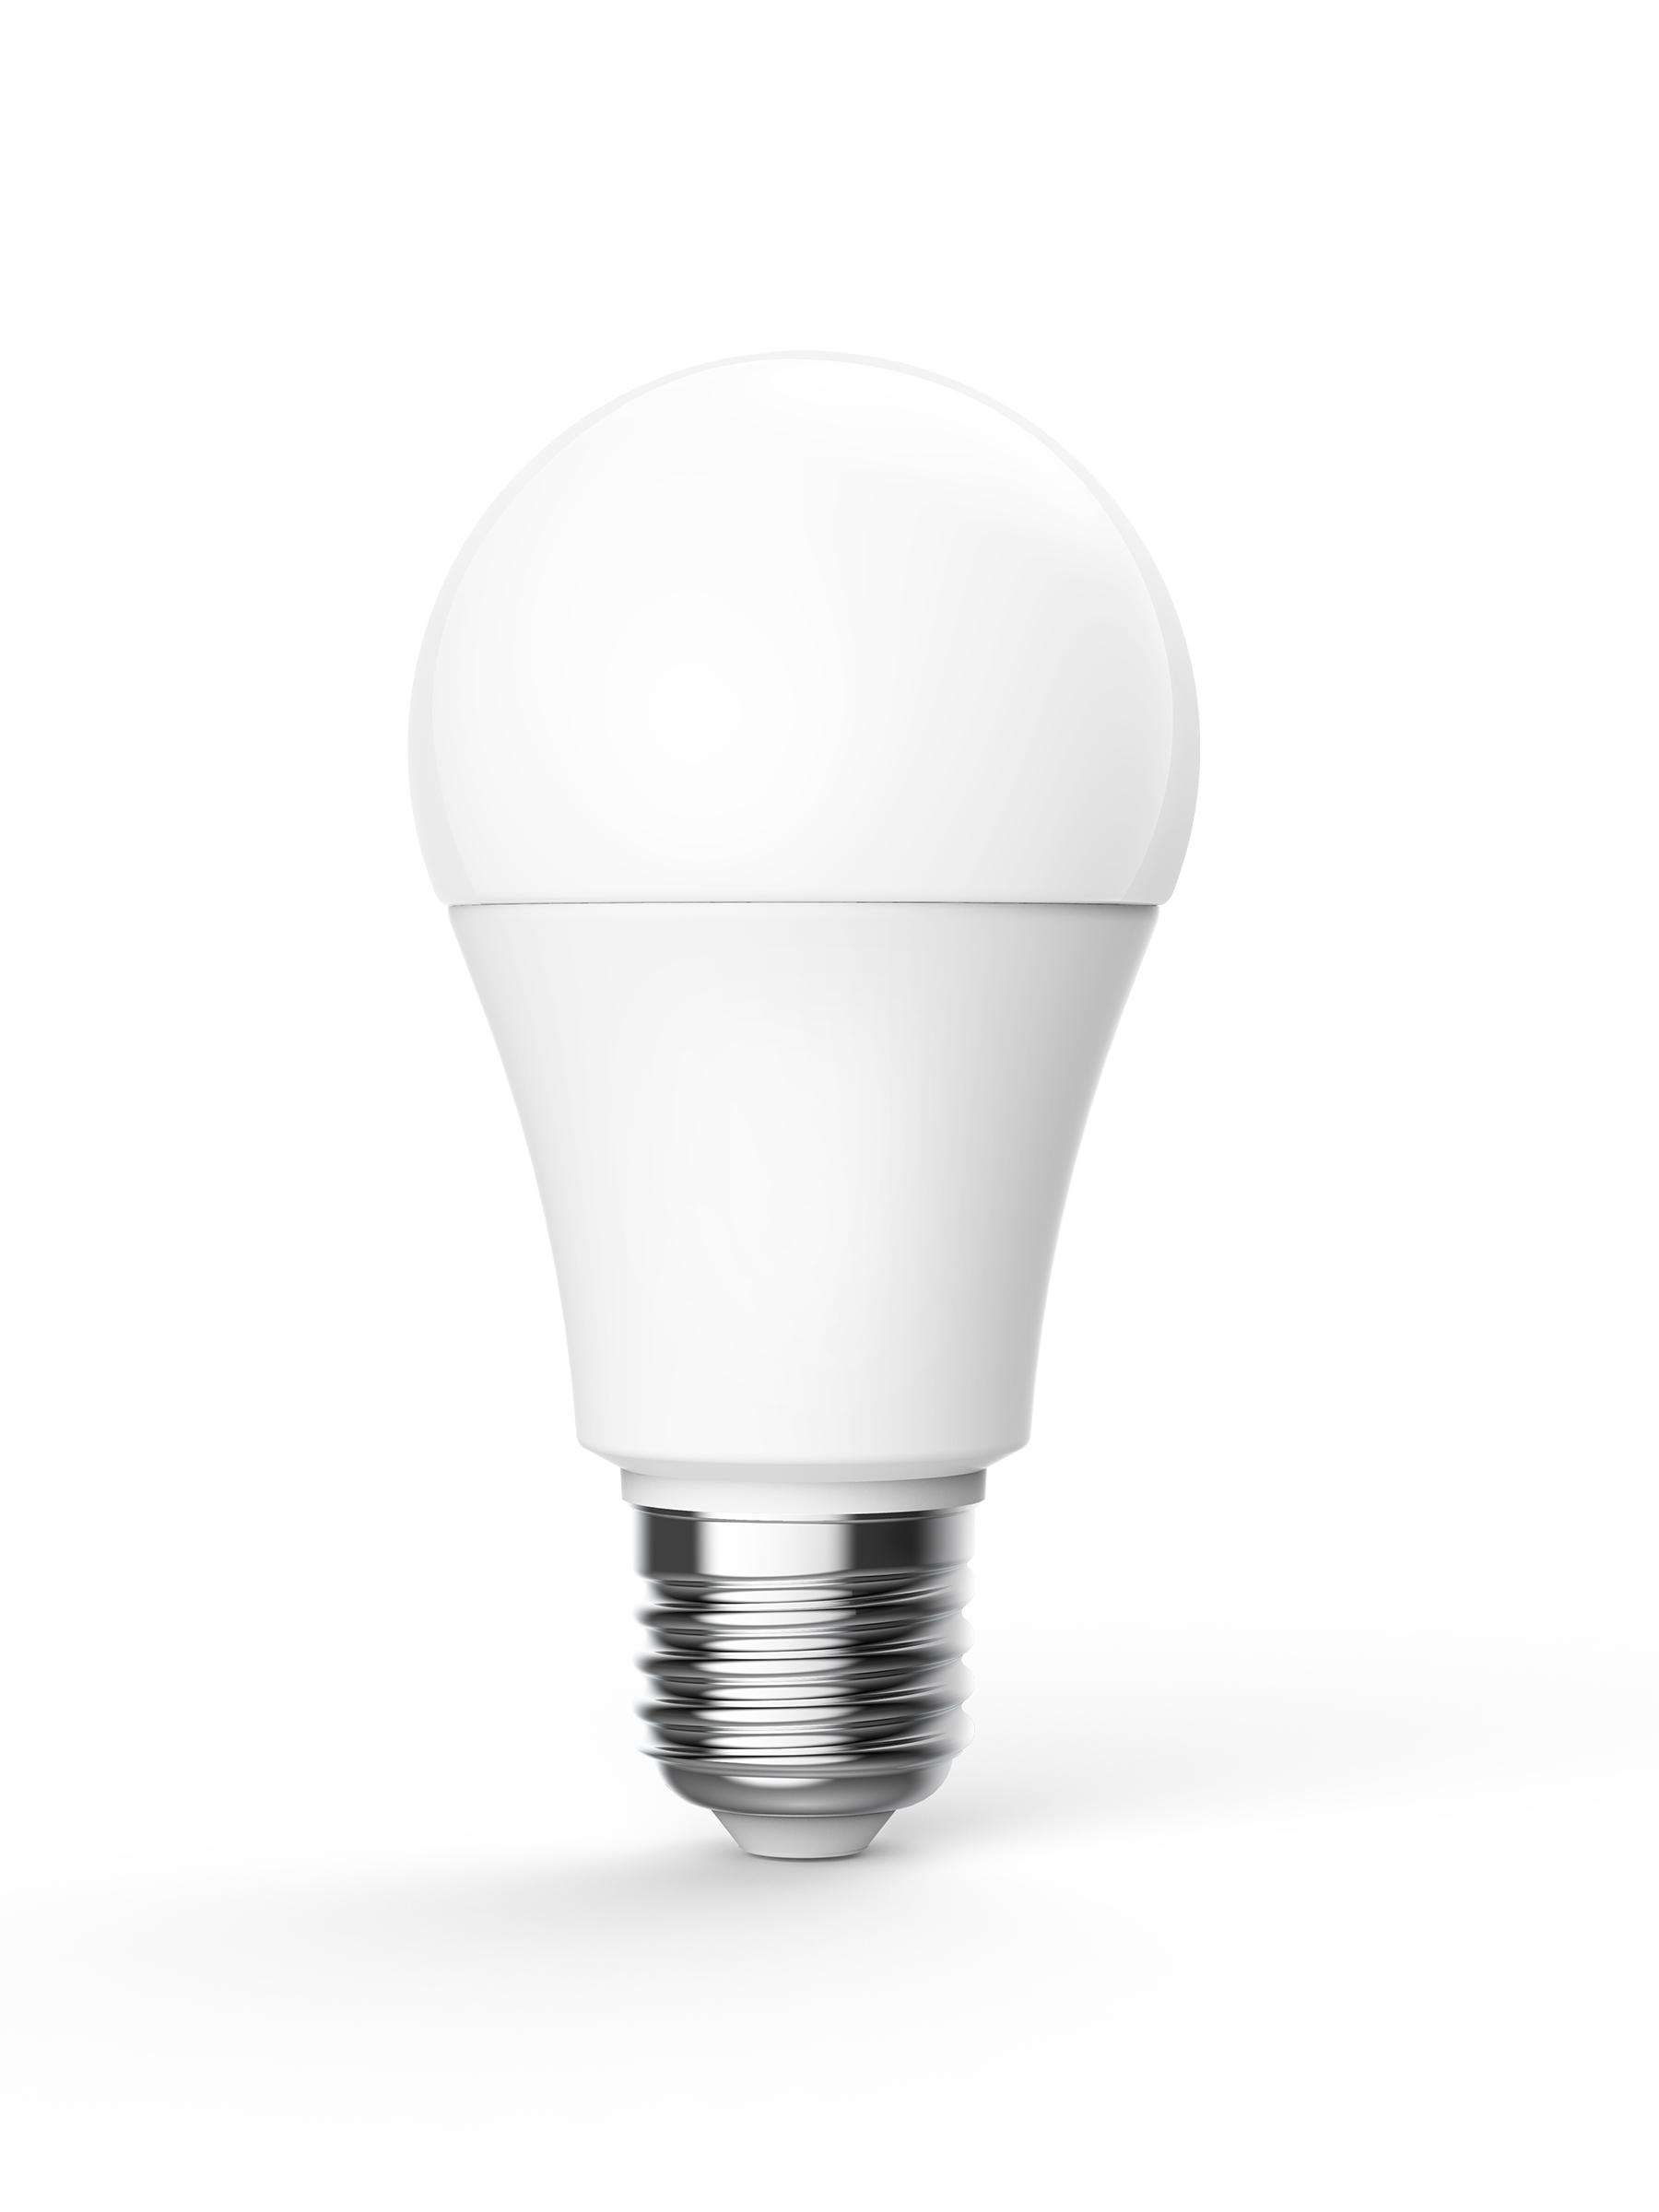 Умная лампа Aqara Light Bulb T1 комплект с умной розеткой aqara syk42